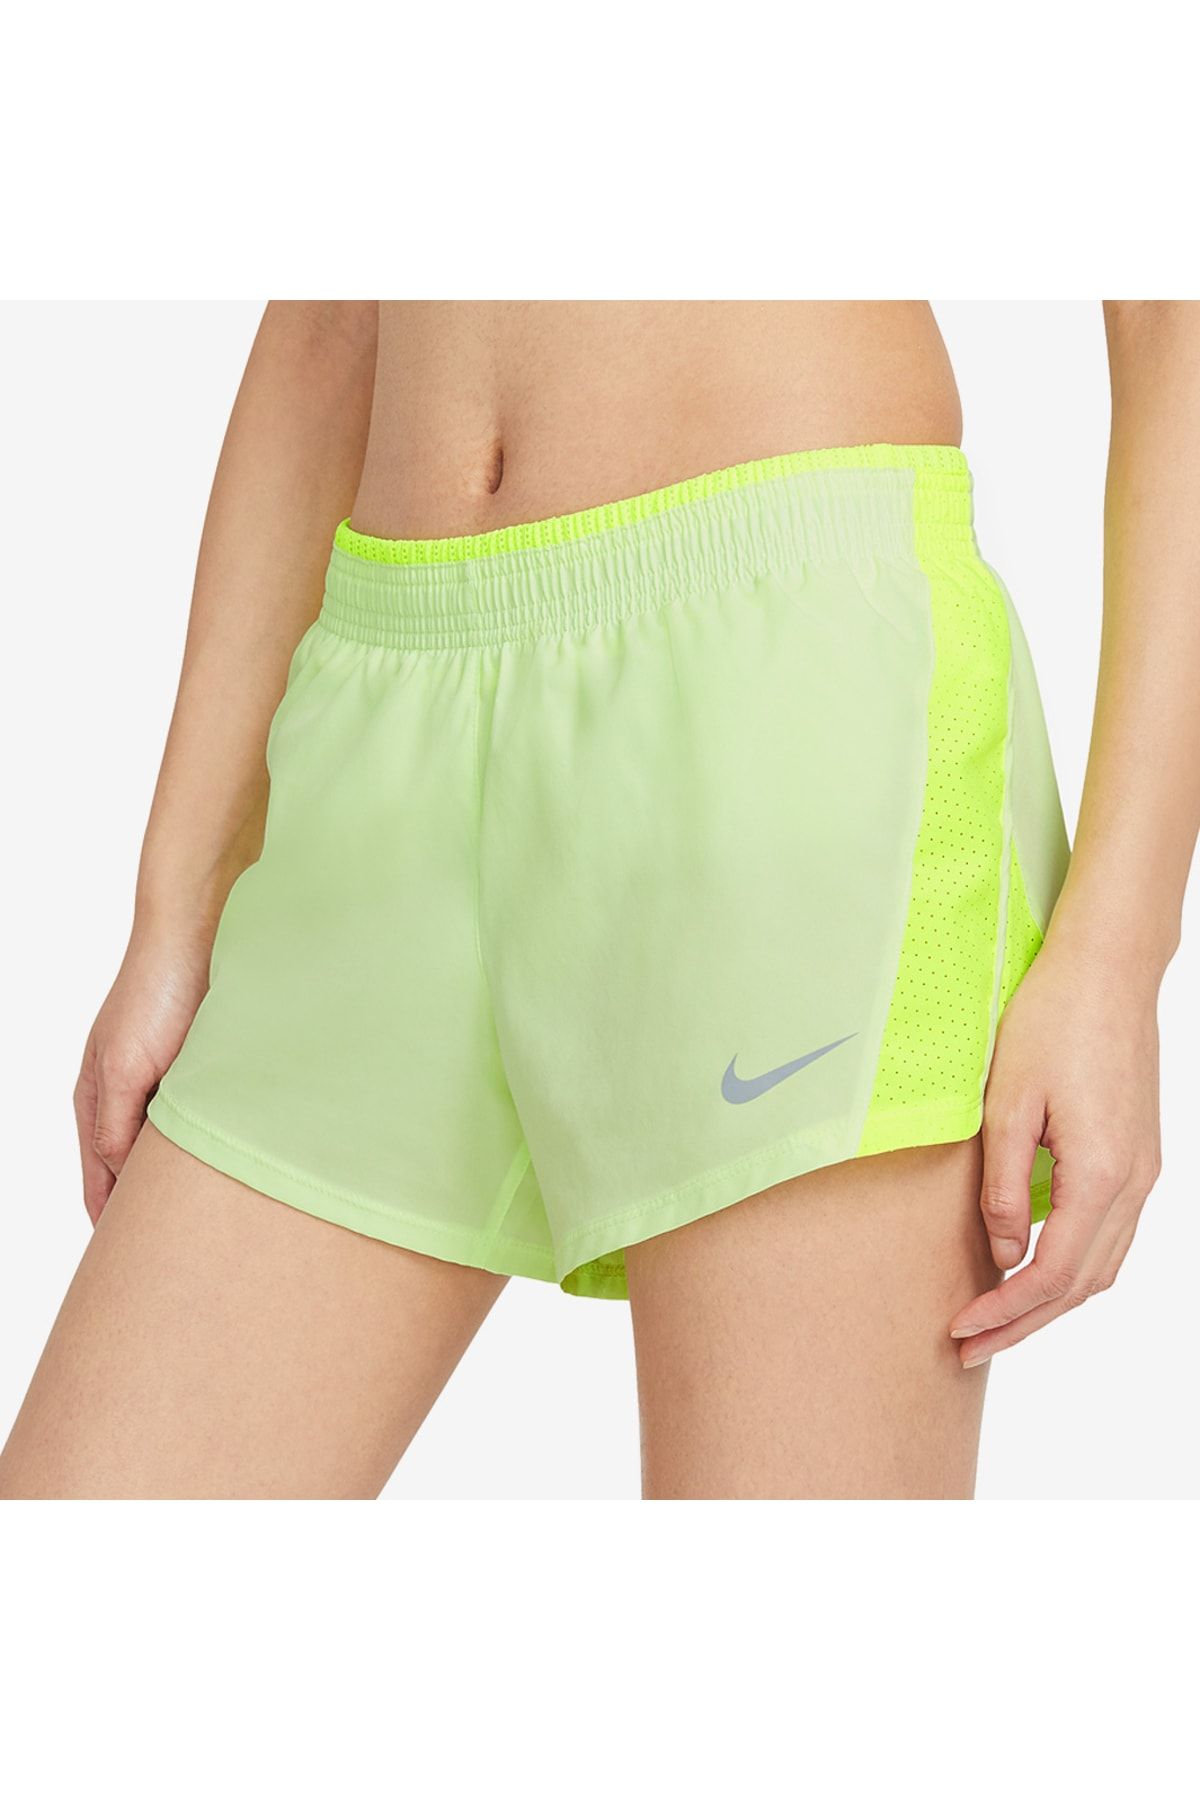 Nike W Nk Dry 10k 2 Kadın Koşu Şort 895863 701